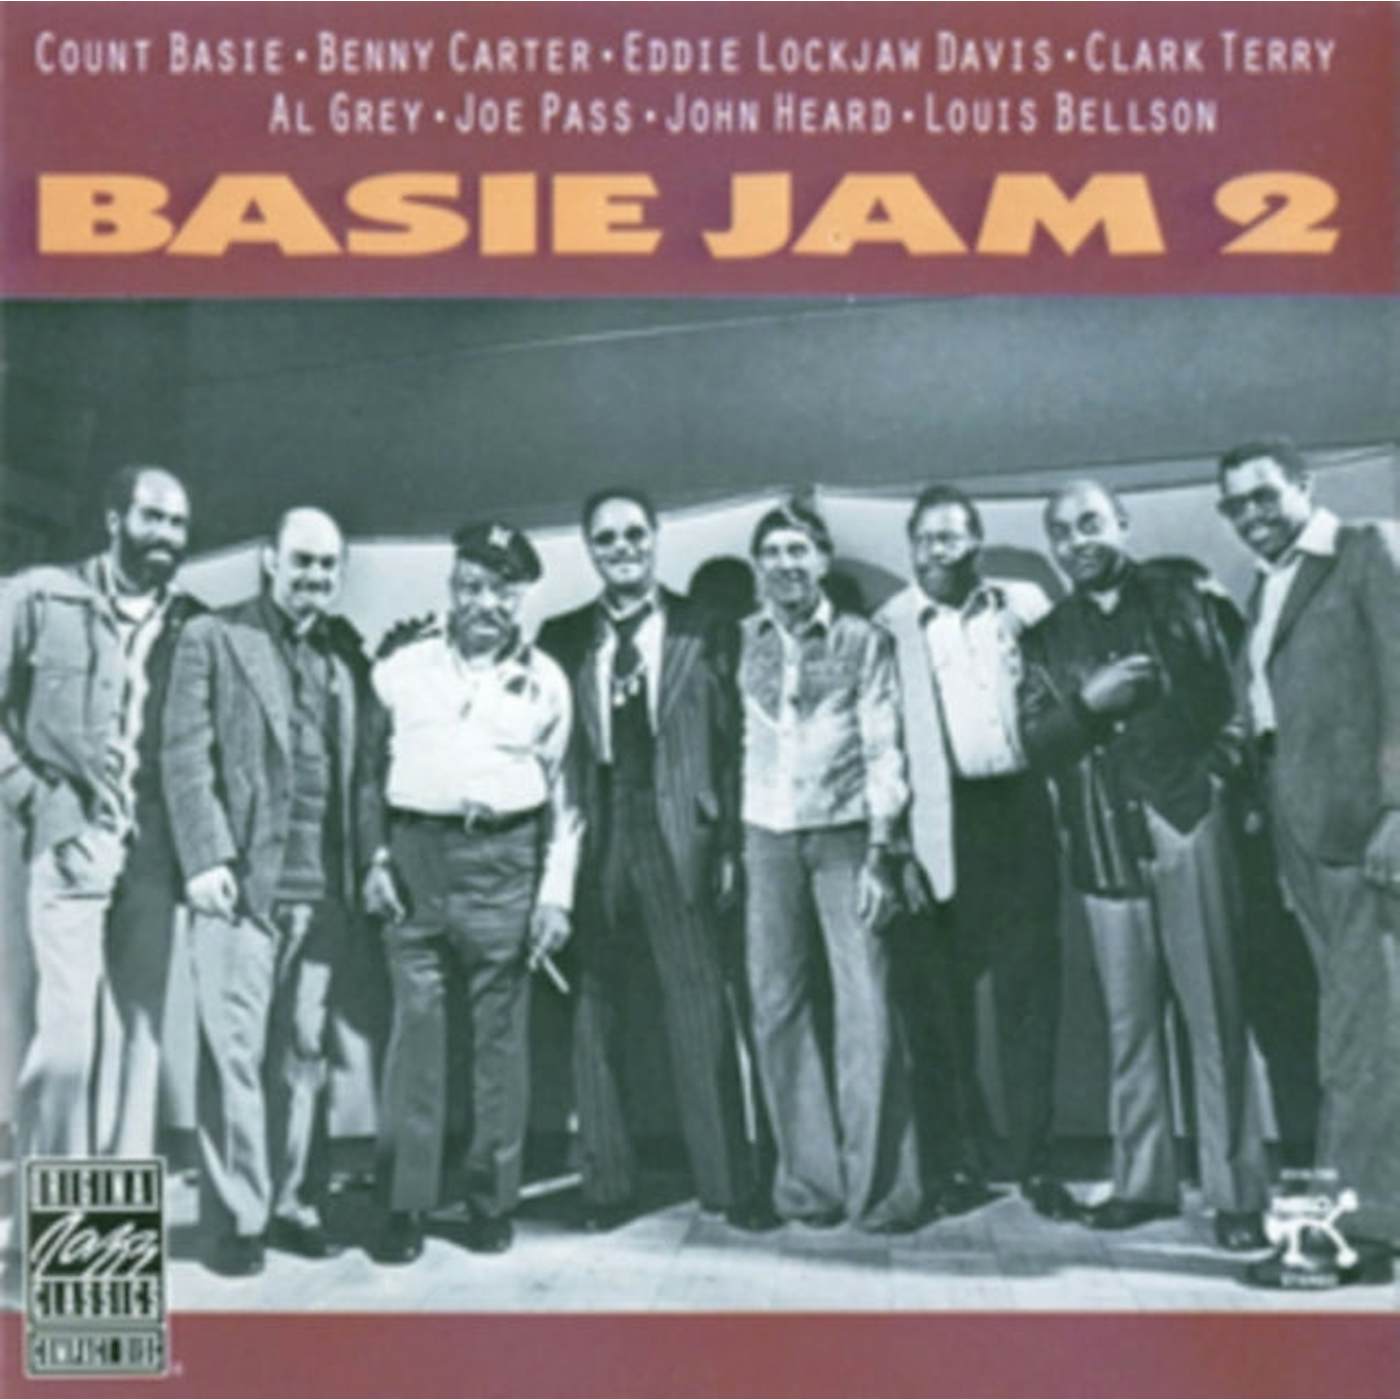 Count Basie CD - Basie Jam